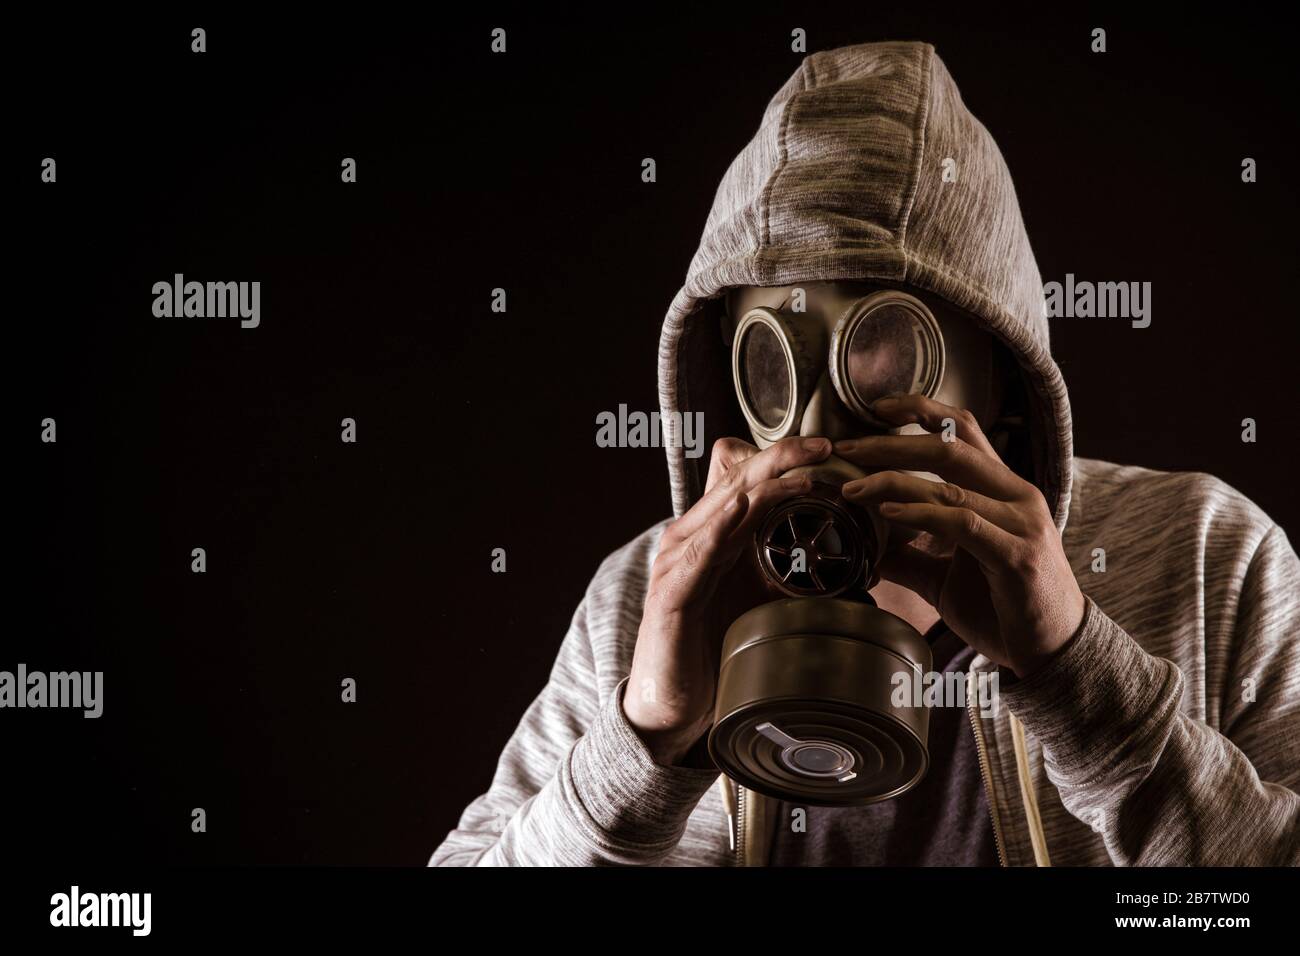 l'uomo mette su maschera di gas per proteggere contro il gas. Ritratto su sfondo nero, colorazione drammatica Foto Stock